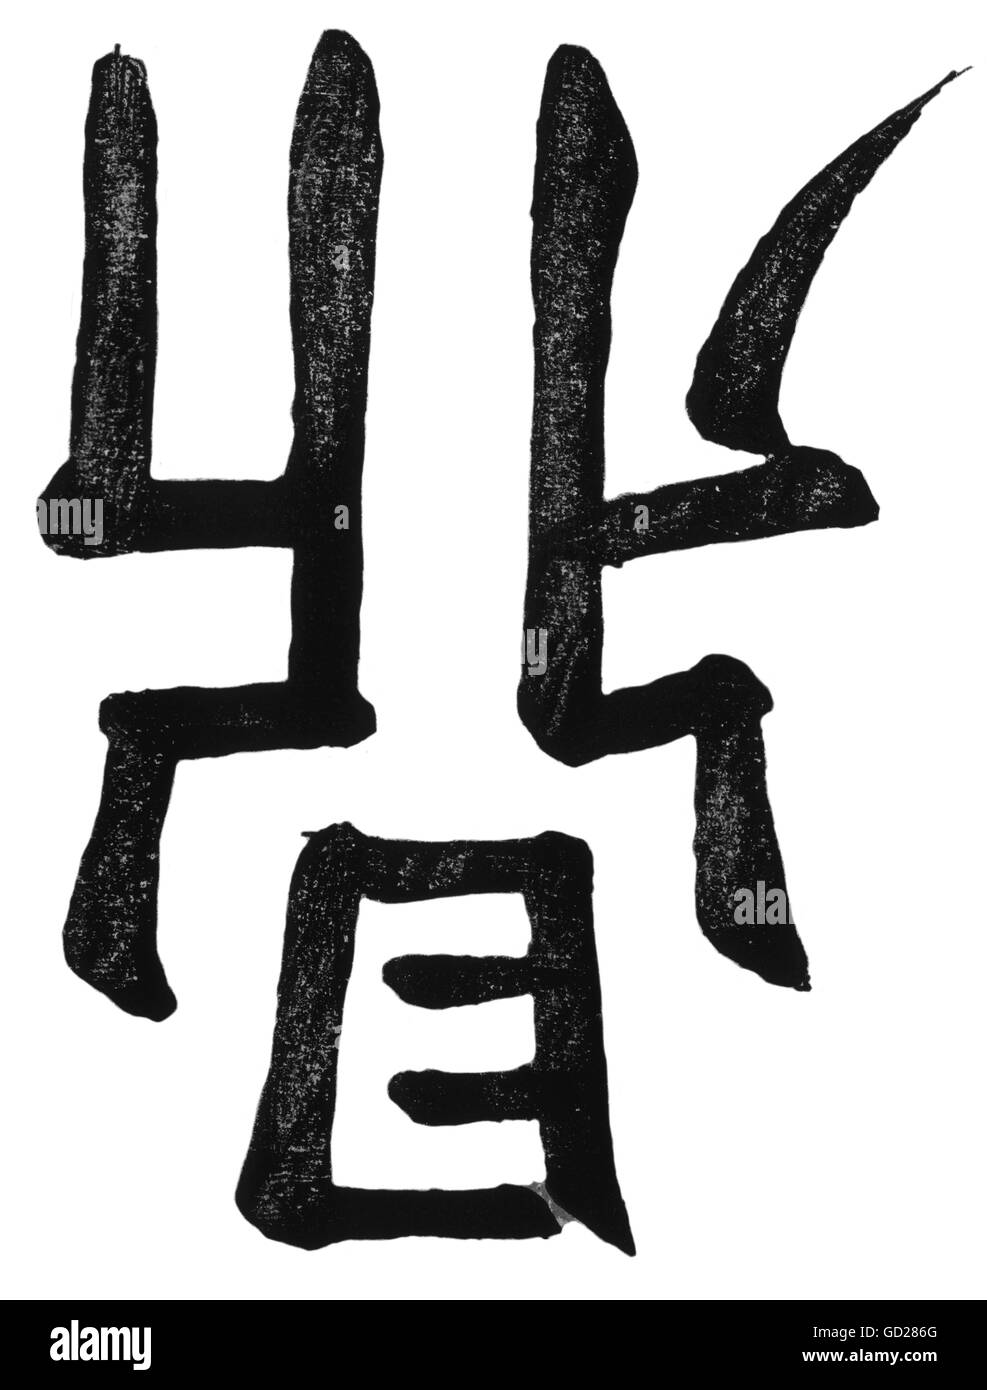 Écriture, écriture, Chine, personnages, trivet, (ding), symbolisant un pot sur pied parsé, avec 13 coups de pinceau, droits additionnels-Clearences-non disponible Banque D'Images